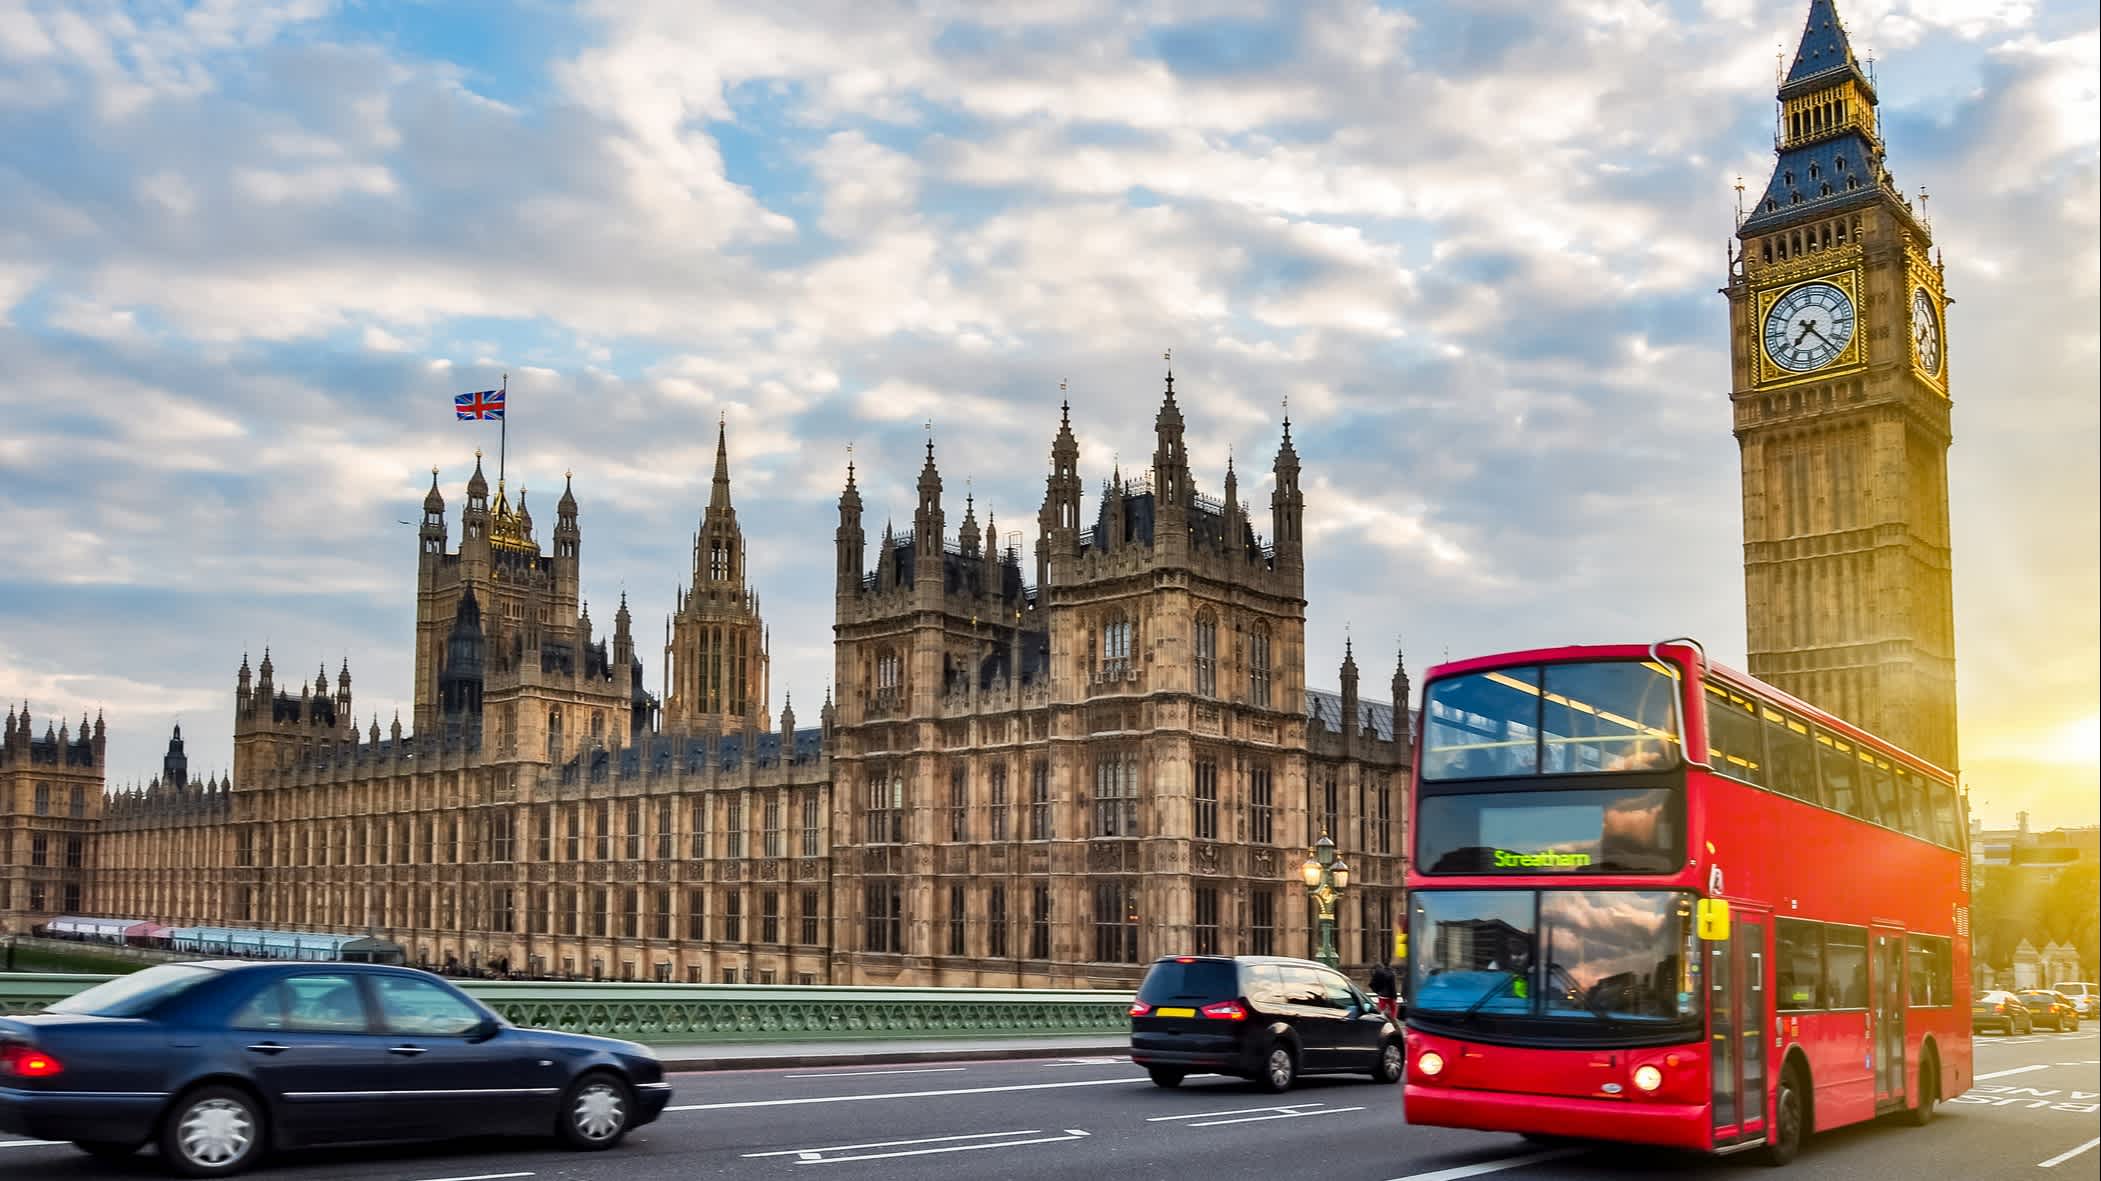 La Chambre du Parlement avec Big Ben et bus à impériale sur le pont de Westminster au coucher du soleil, Londres, Royaume-Uni